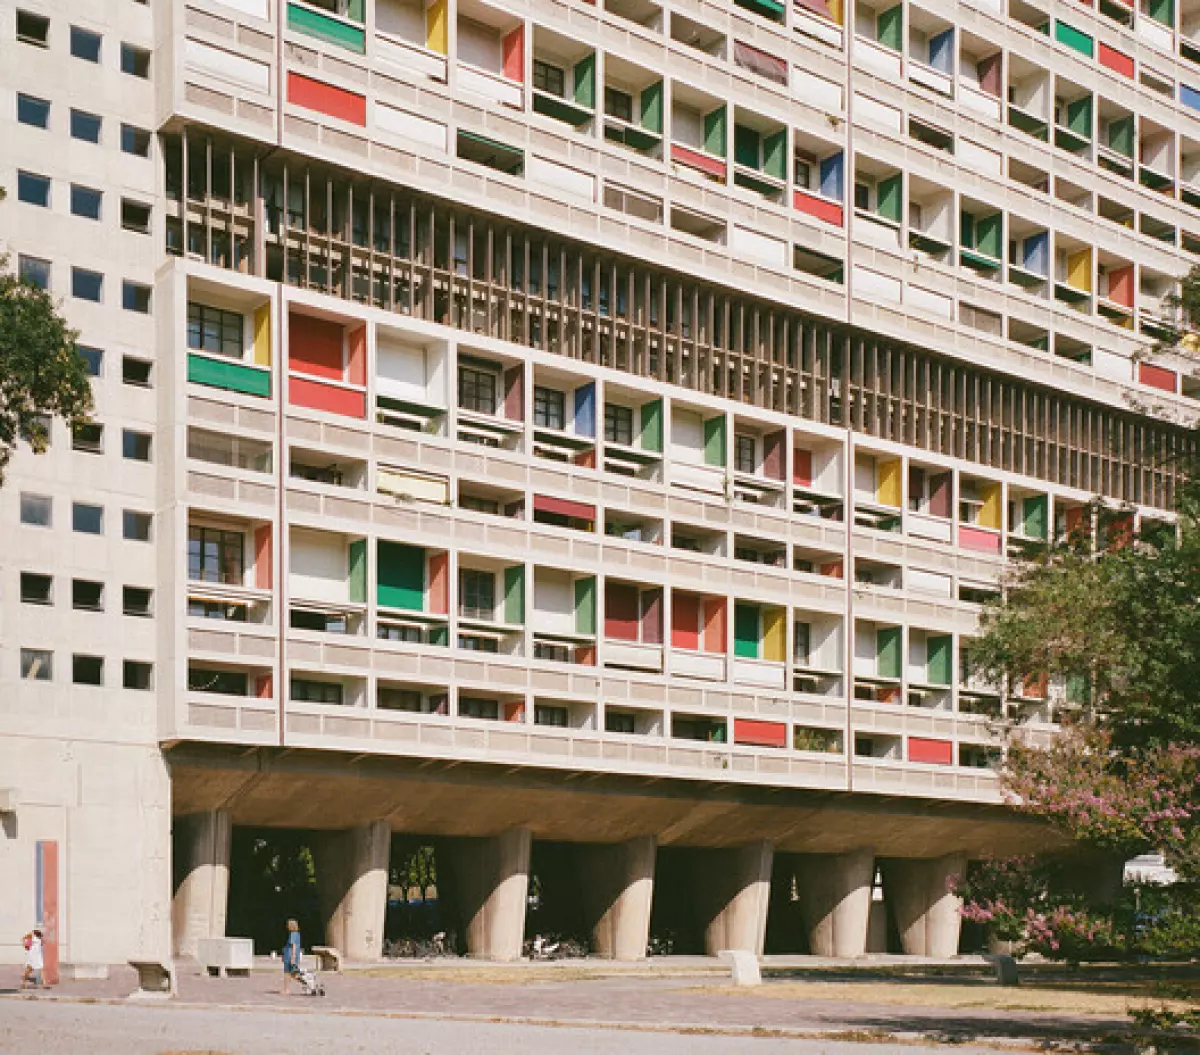 Architecture Classics: Unite d' Habitation / Le Corbusier - Windows, Facade